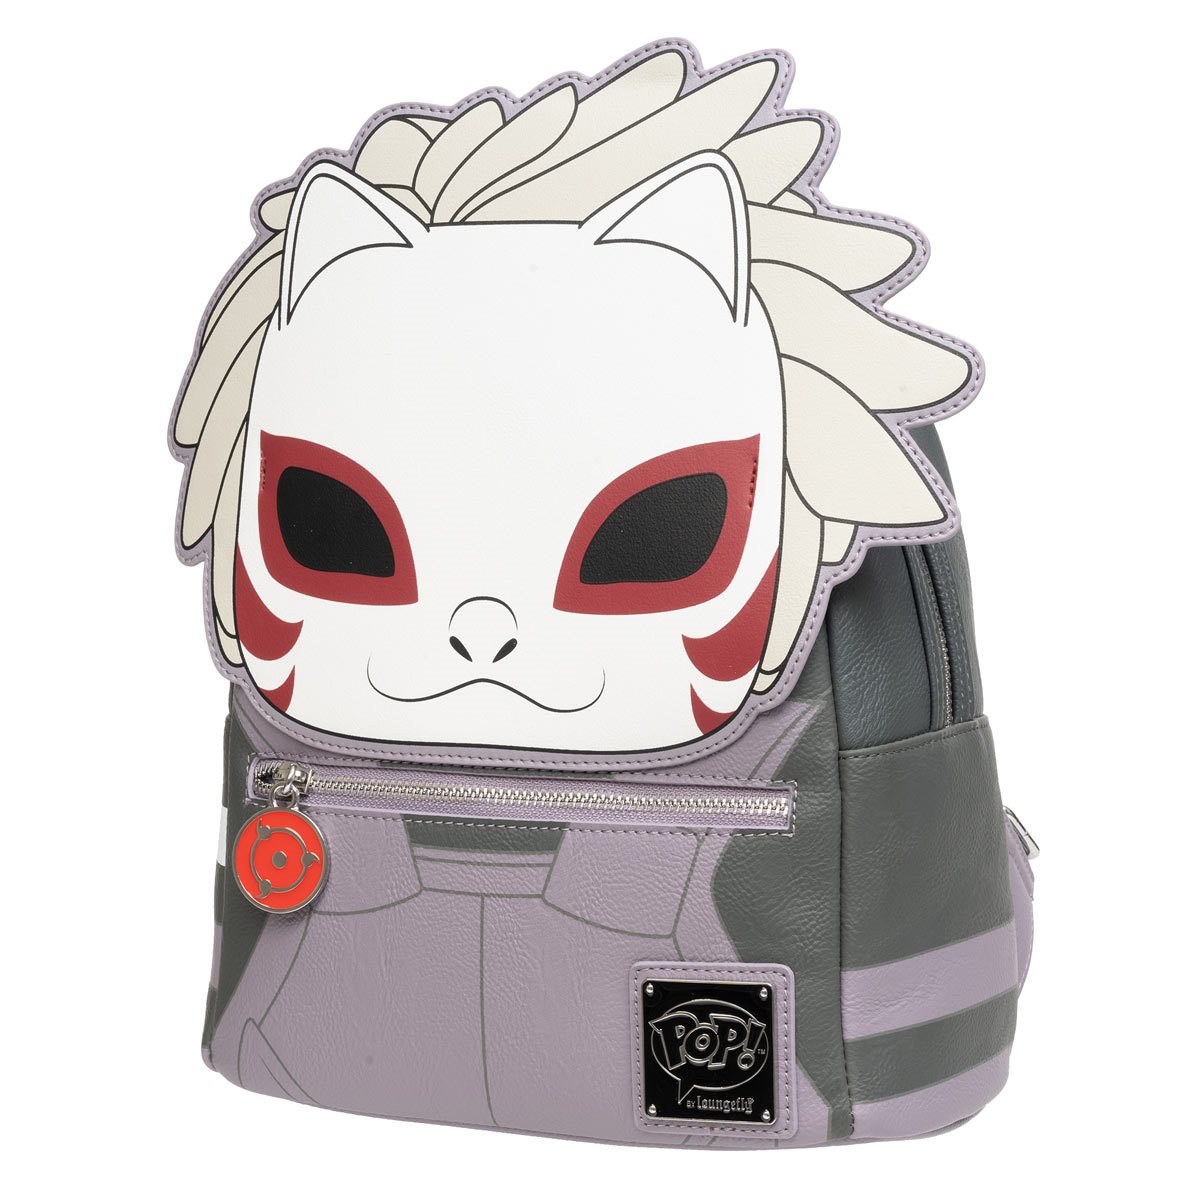 naruto mini backpack, Five Below